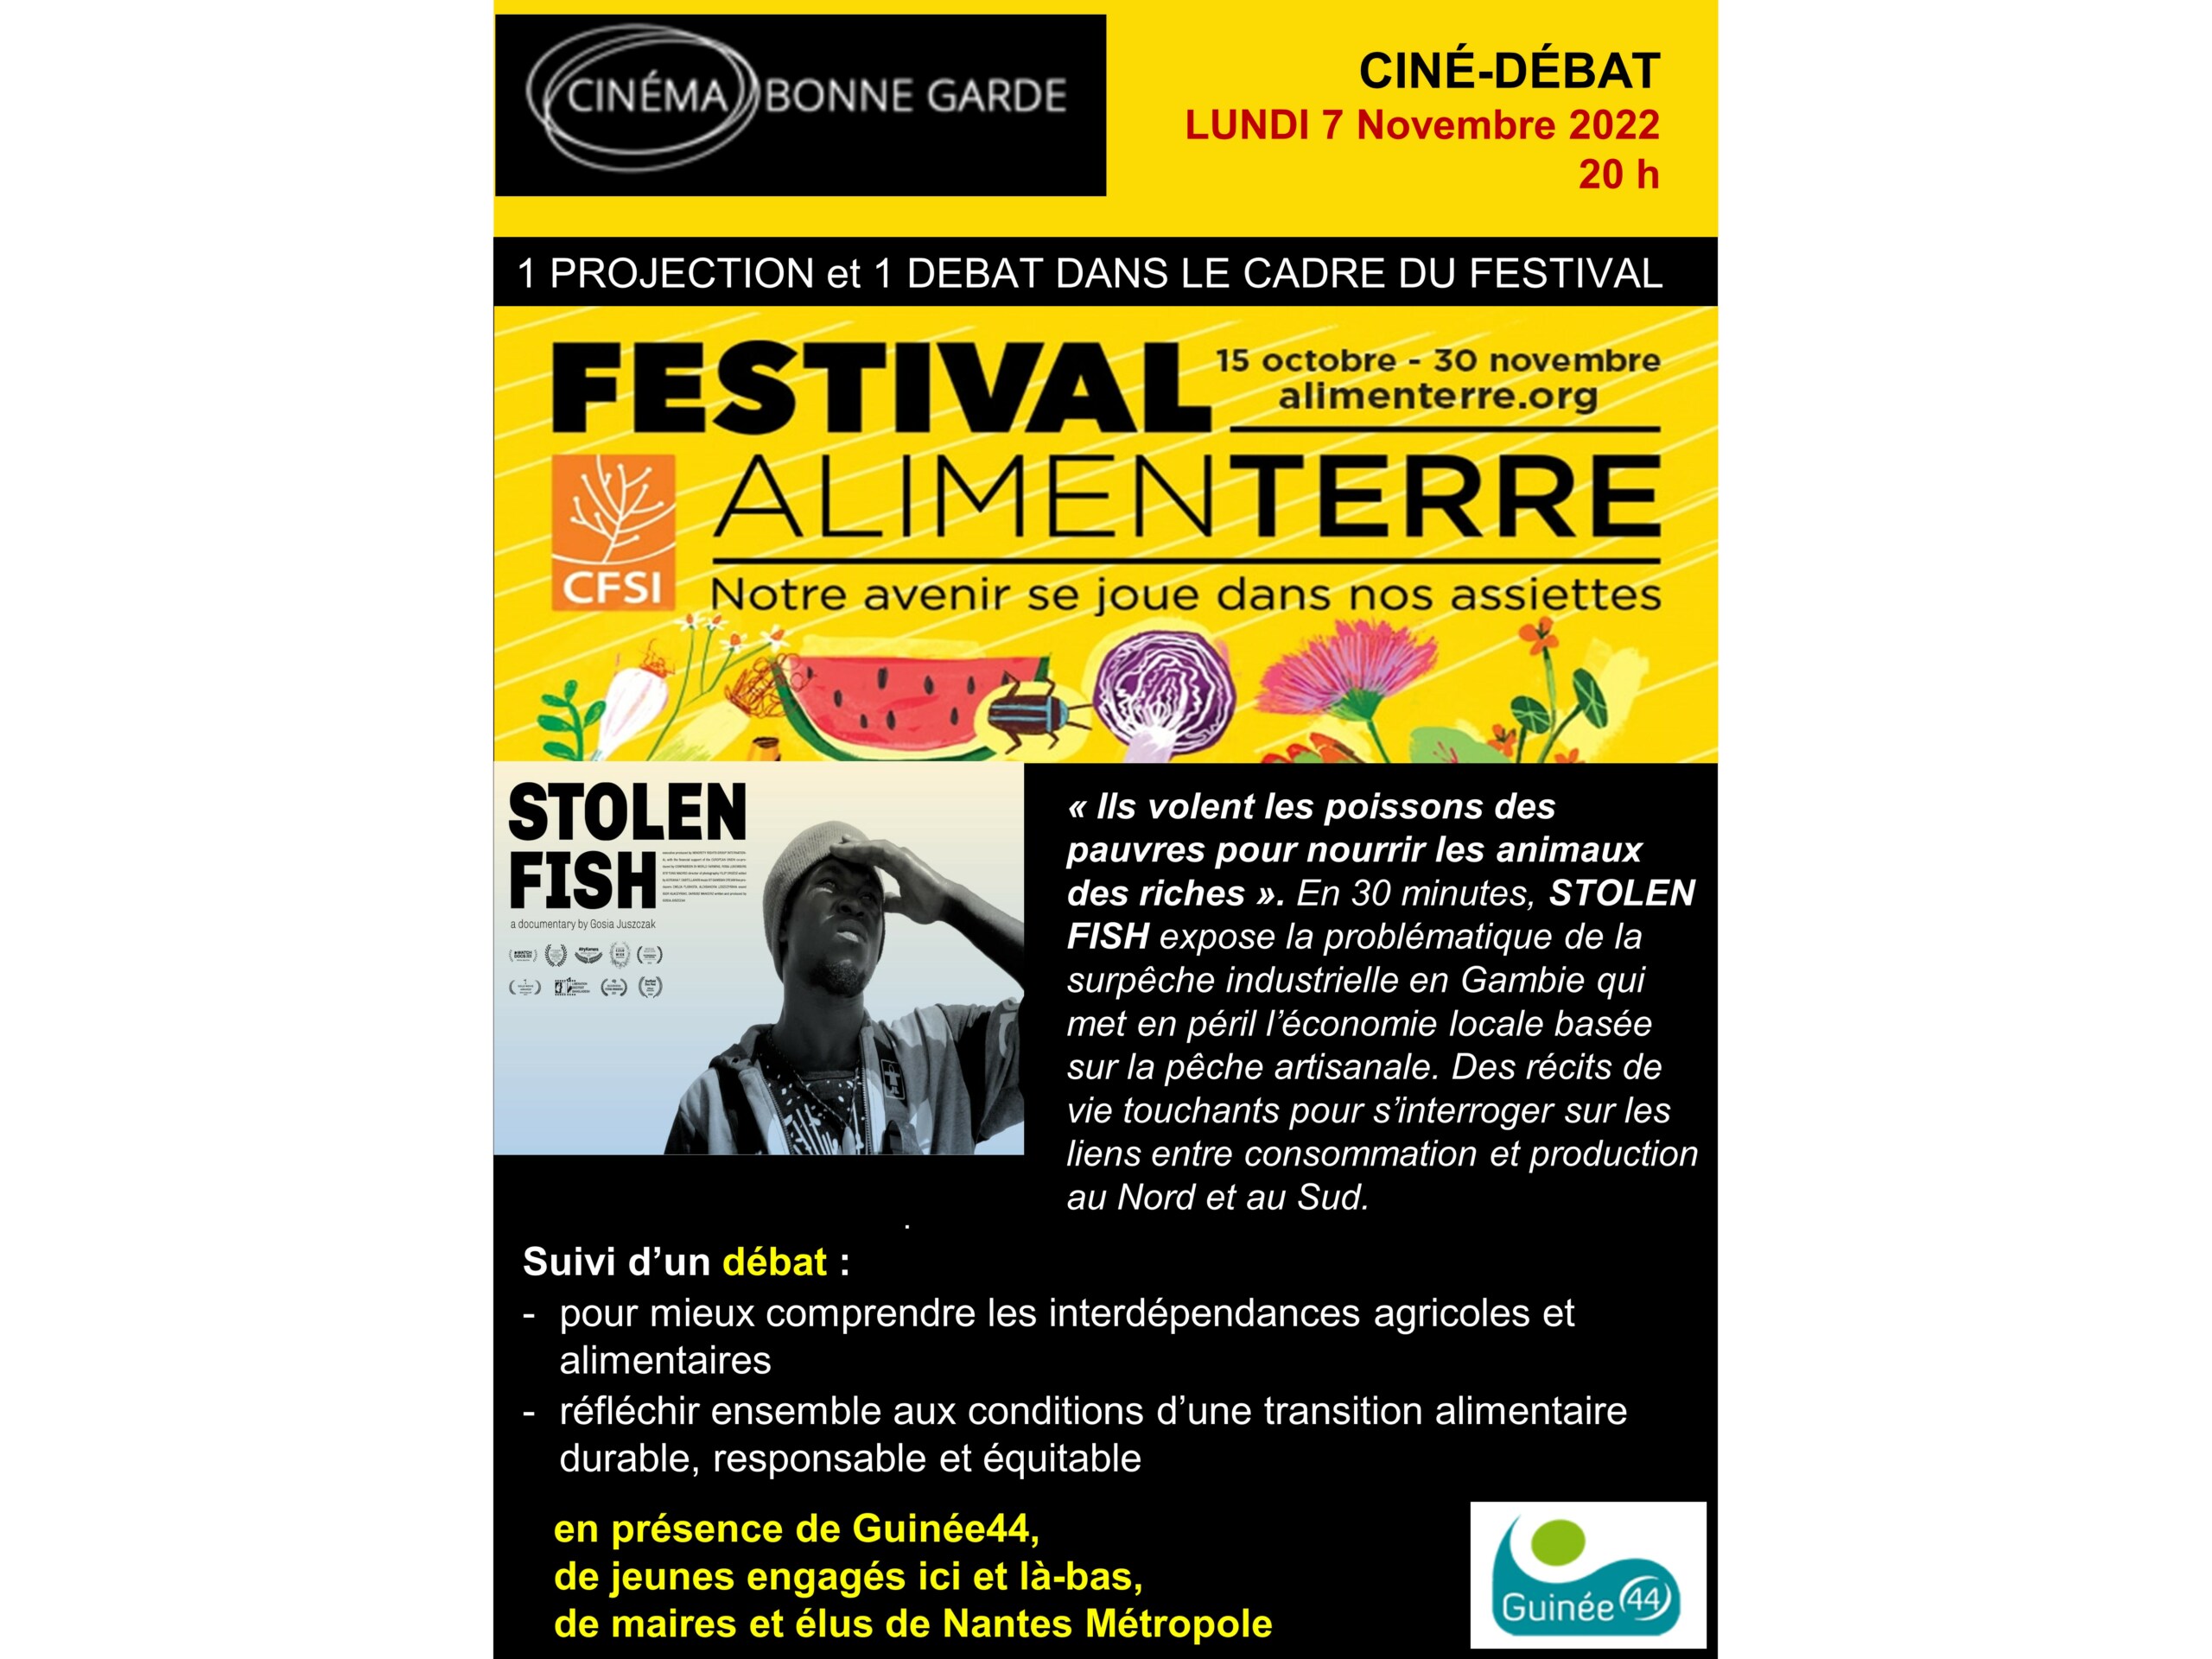 Ciné-Débat -L'avenir du monde dans nos assiettes- 7 novembre 2022 à 20h- Cinéma Le Bonne Garde à Nantes